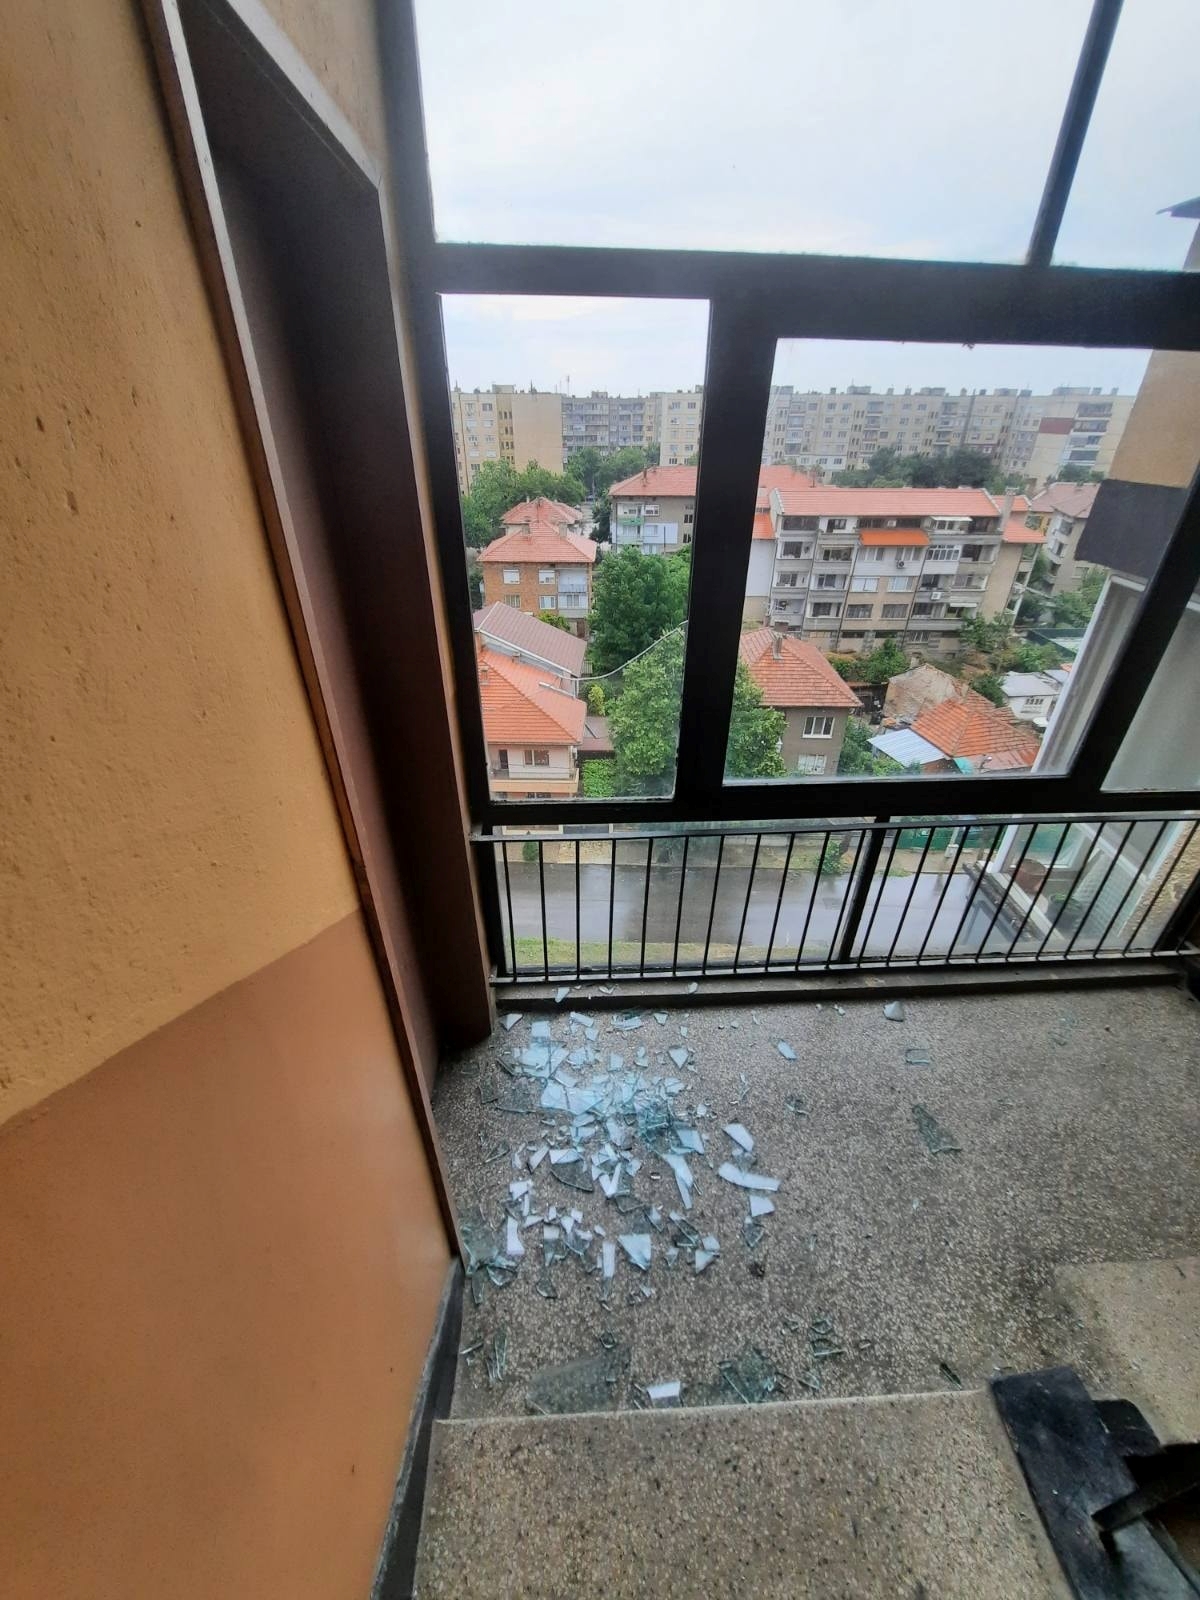 Невзривена противоградна ракета падна на тераса на блок във Видин (Снимки)